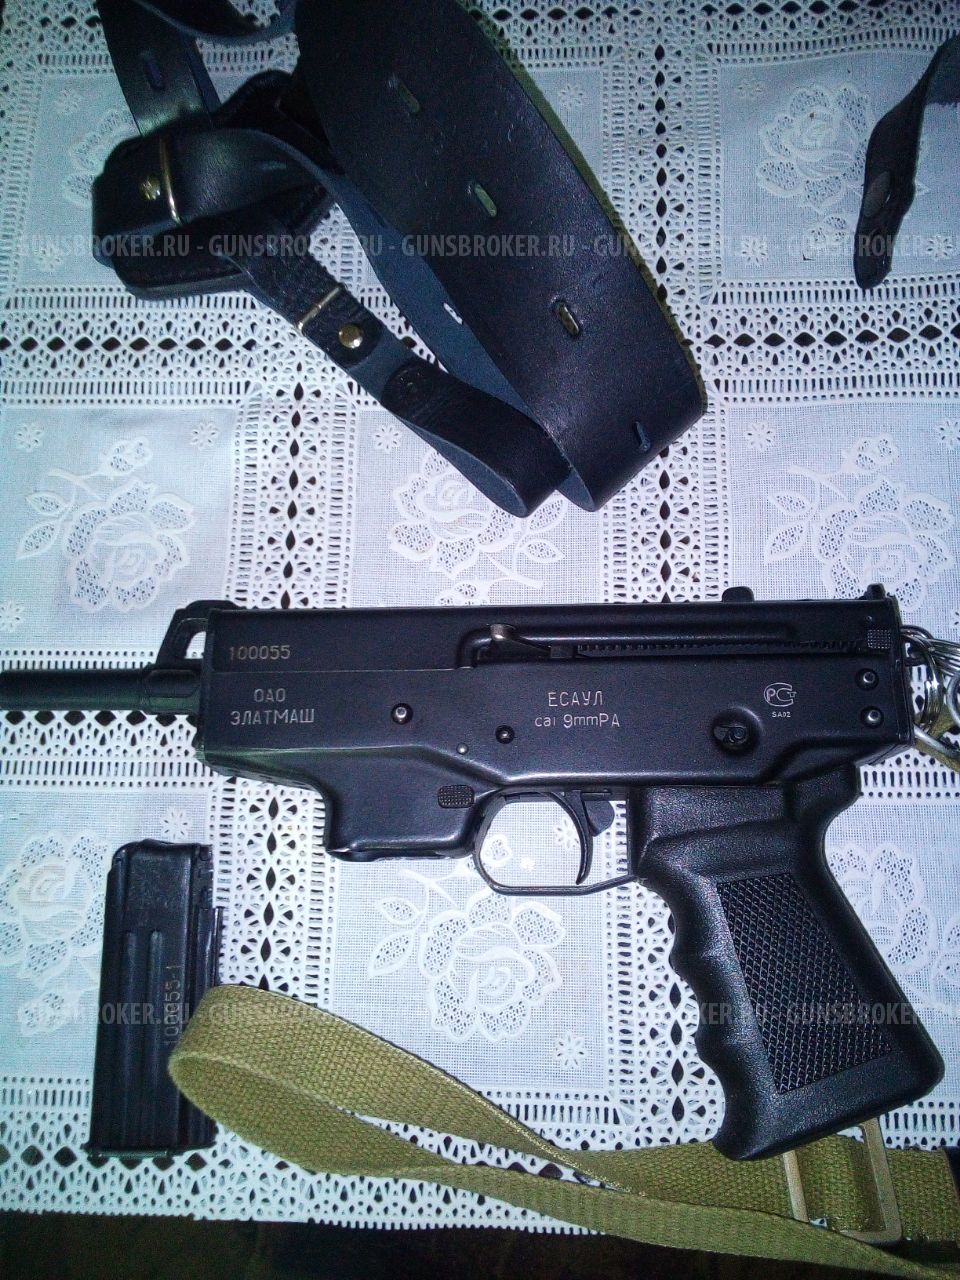 Пистолет травматический ОООП ПДТ-9Т Есаул калибр 9 мм РА